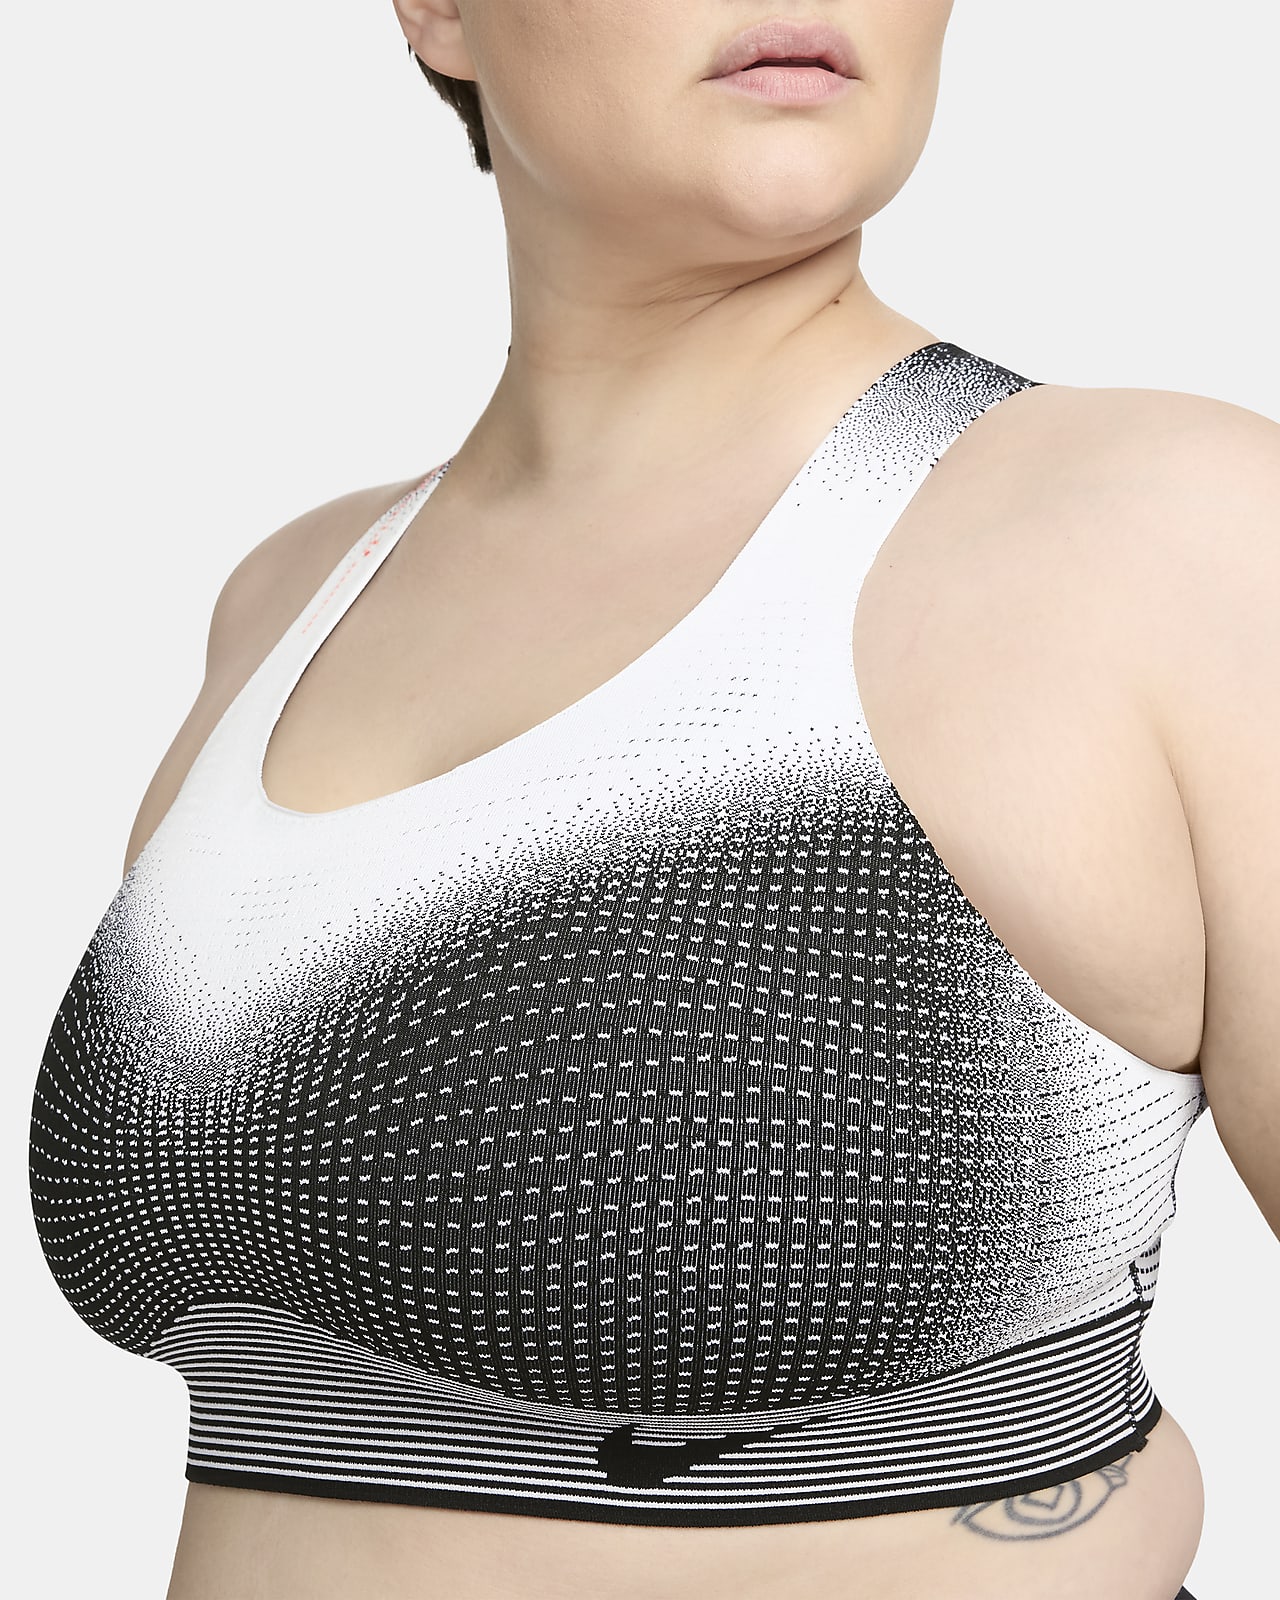 Nike, Intimates & Sleepwear, Nike Flyknit Womens Highsupport Nonpadded Sports  Bra Size L